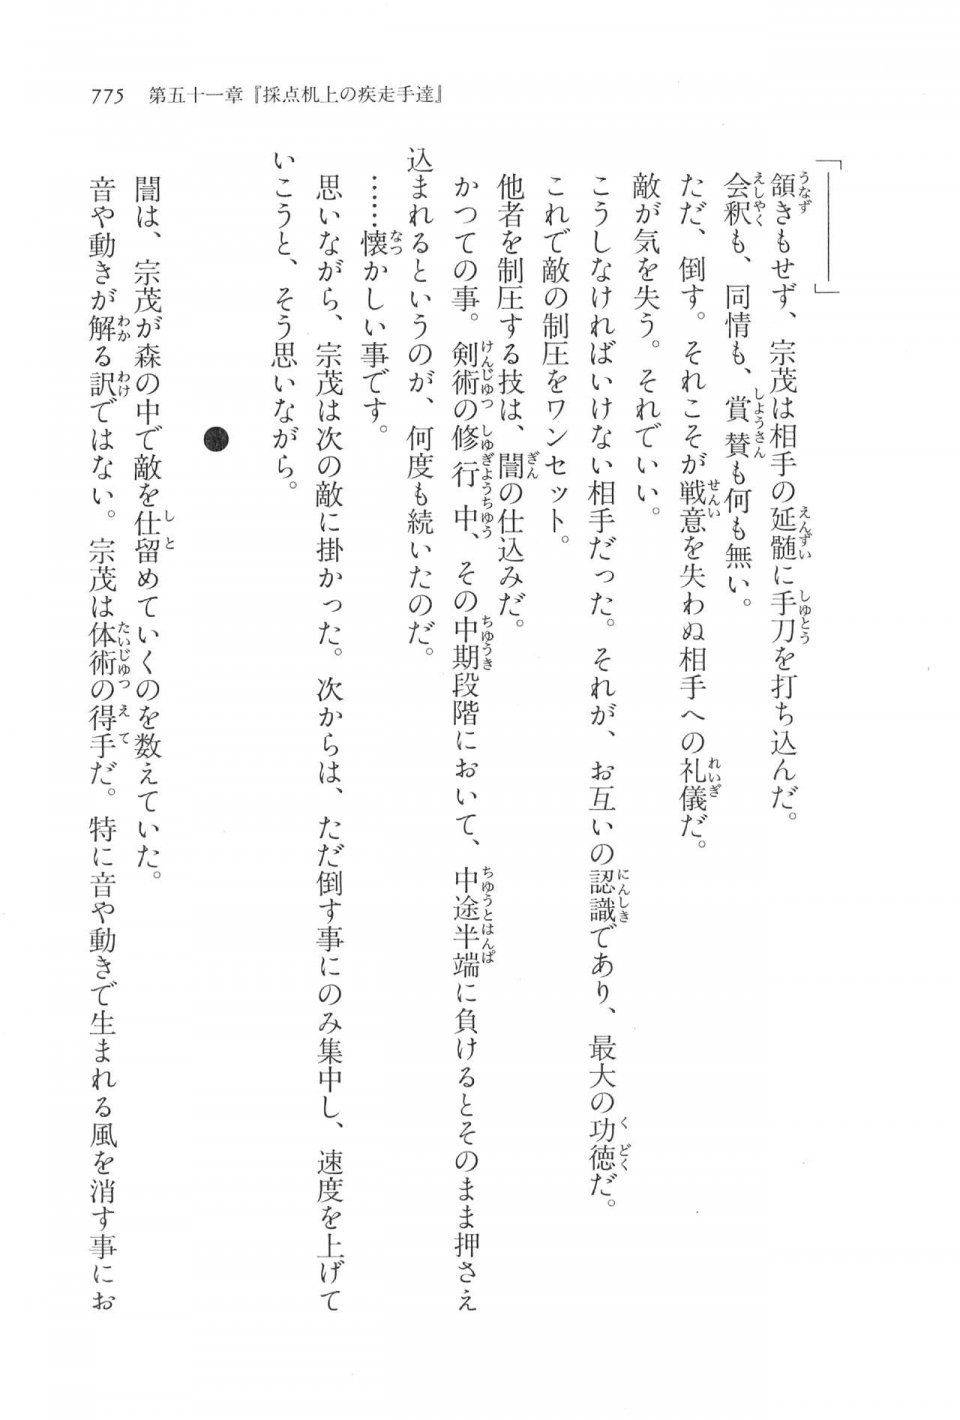 Kyoukai Senjou no Horizon LN Vol 17(7B) - Photo #777